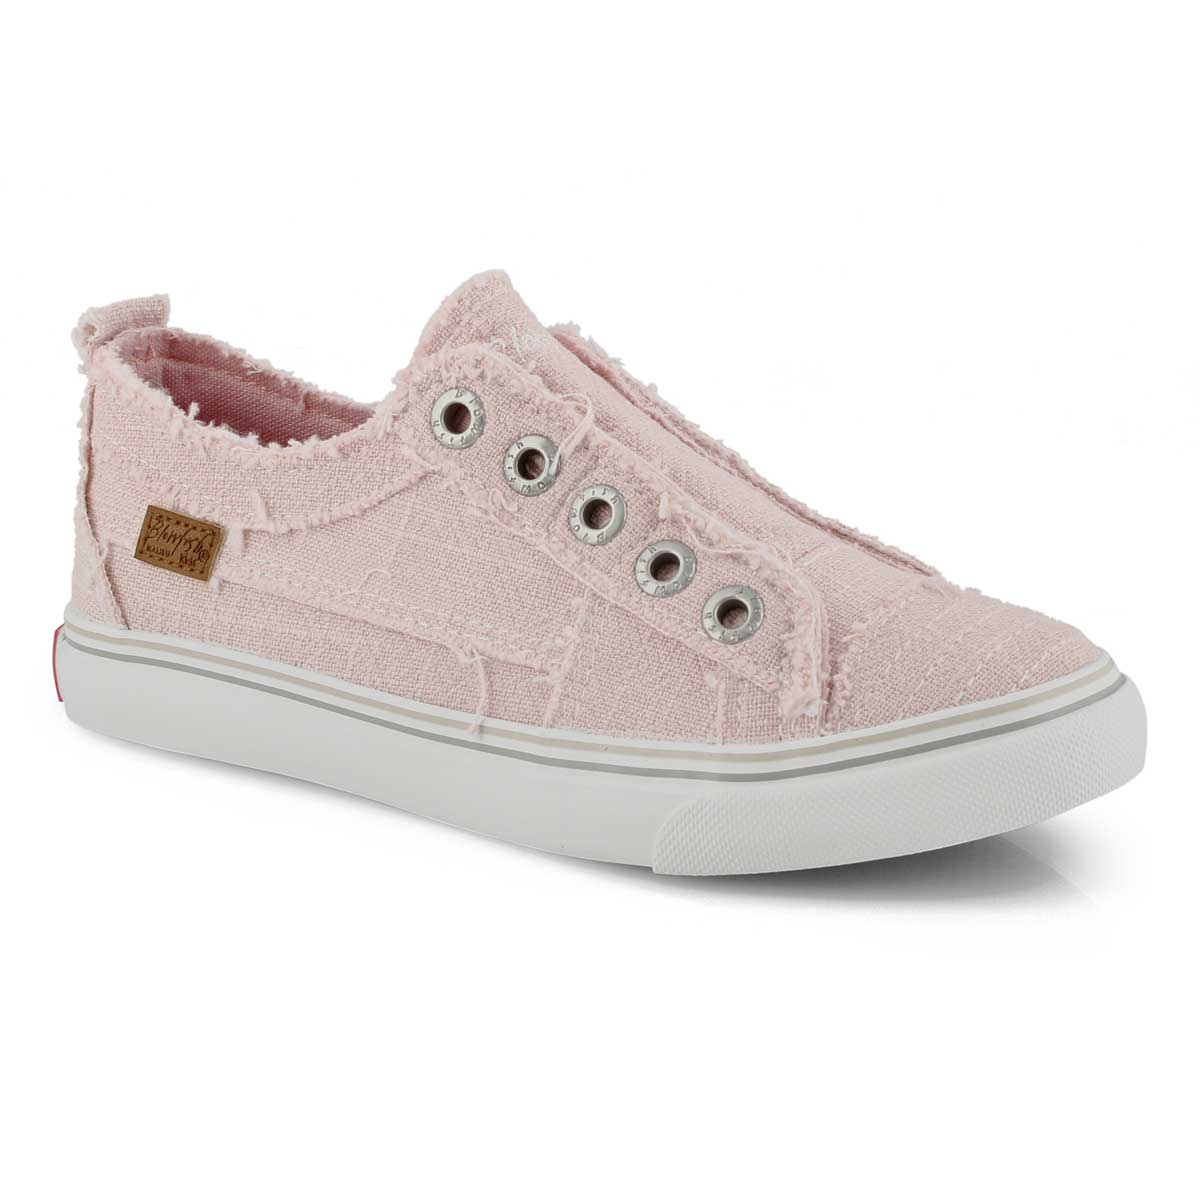 Girls' Play Sneaker - Pink Lemonade